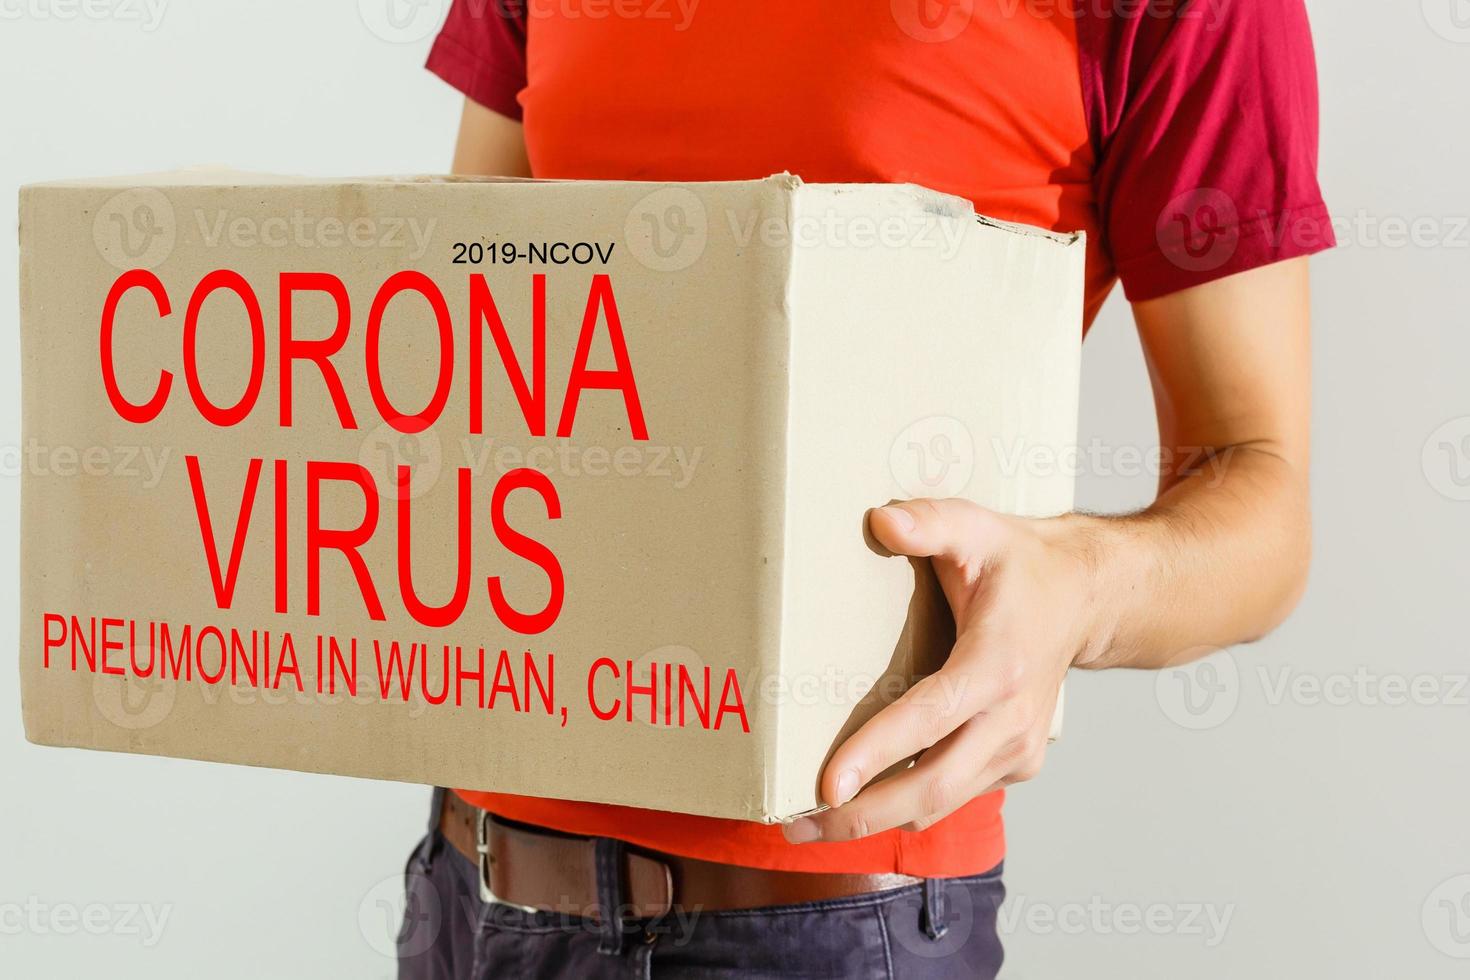 entrega hombre con caja, coronavirus desde porcelana. novela coronavirus - 2019-nCoV, chino wuhan virus untado concepto foto